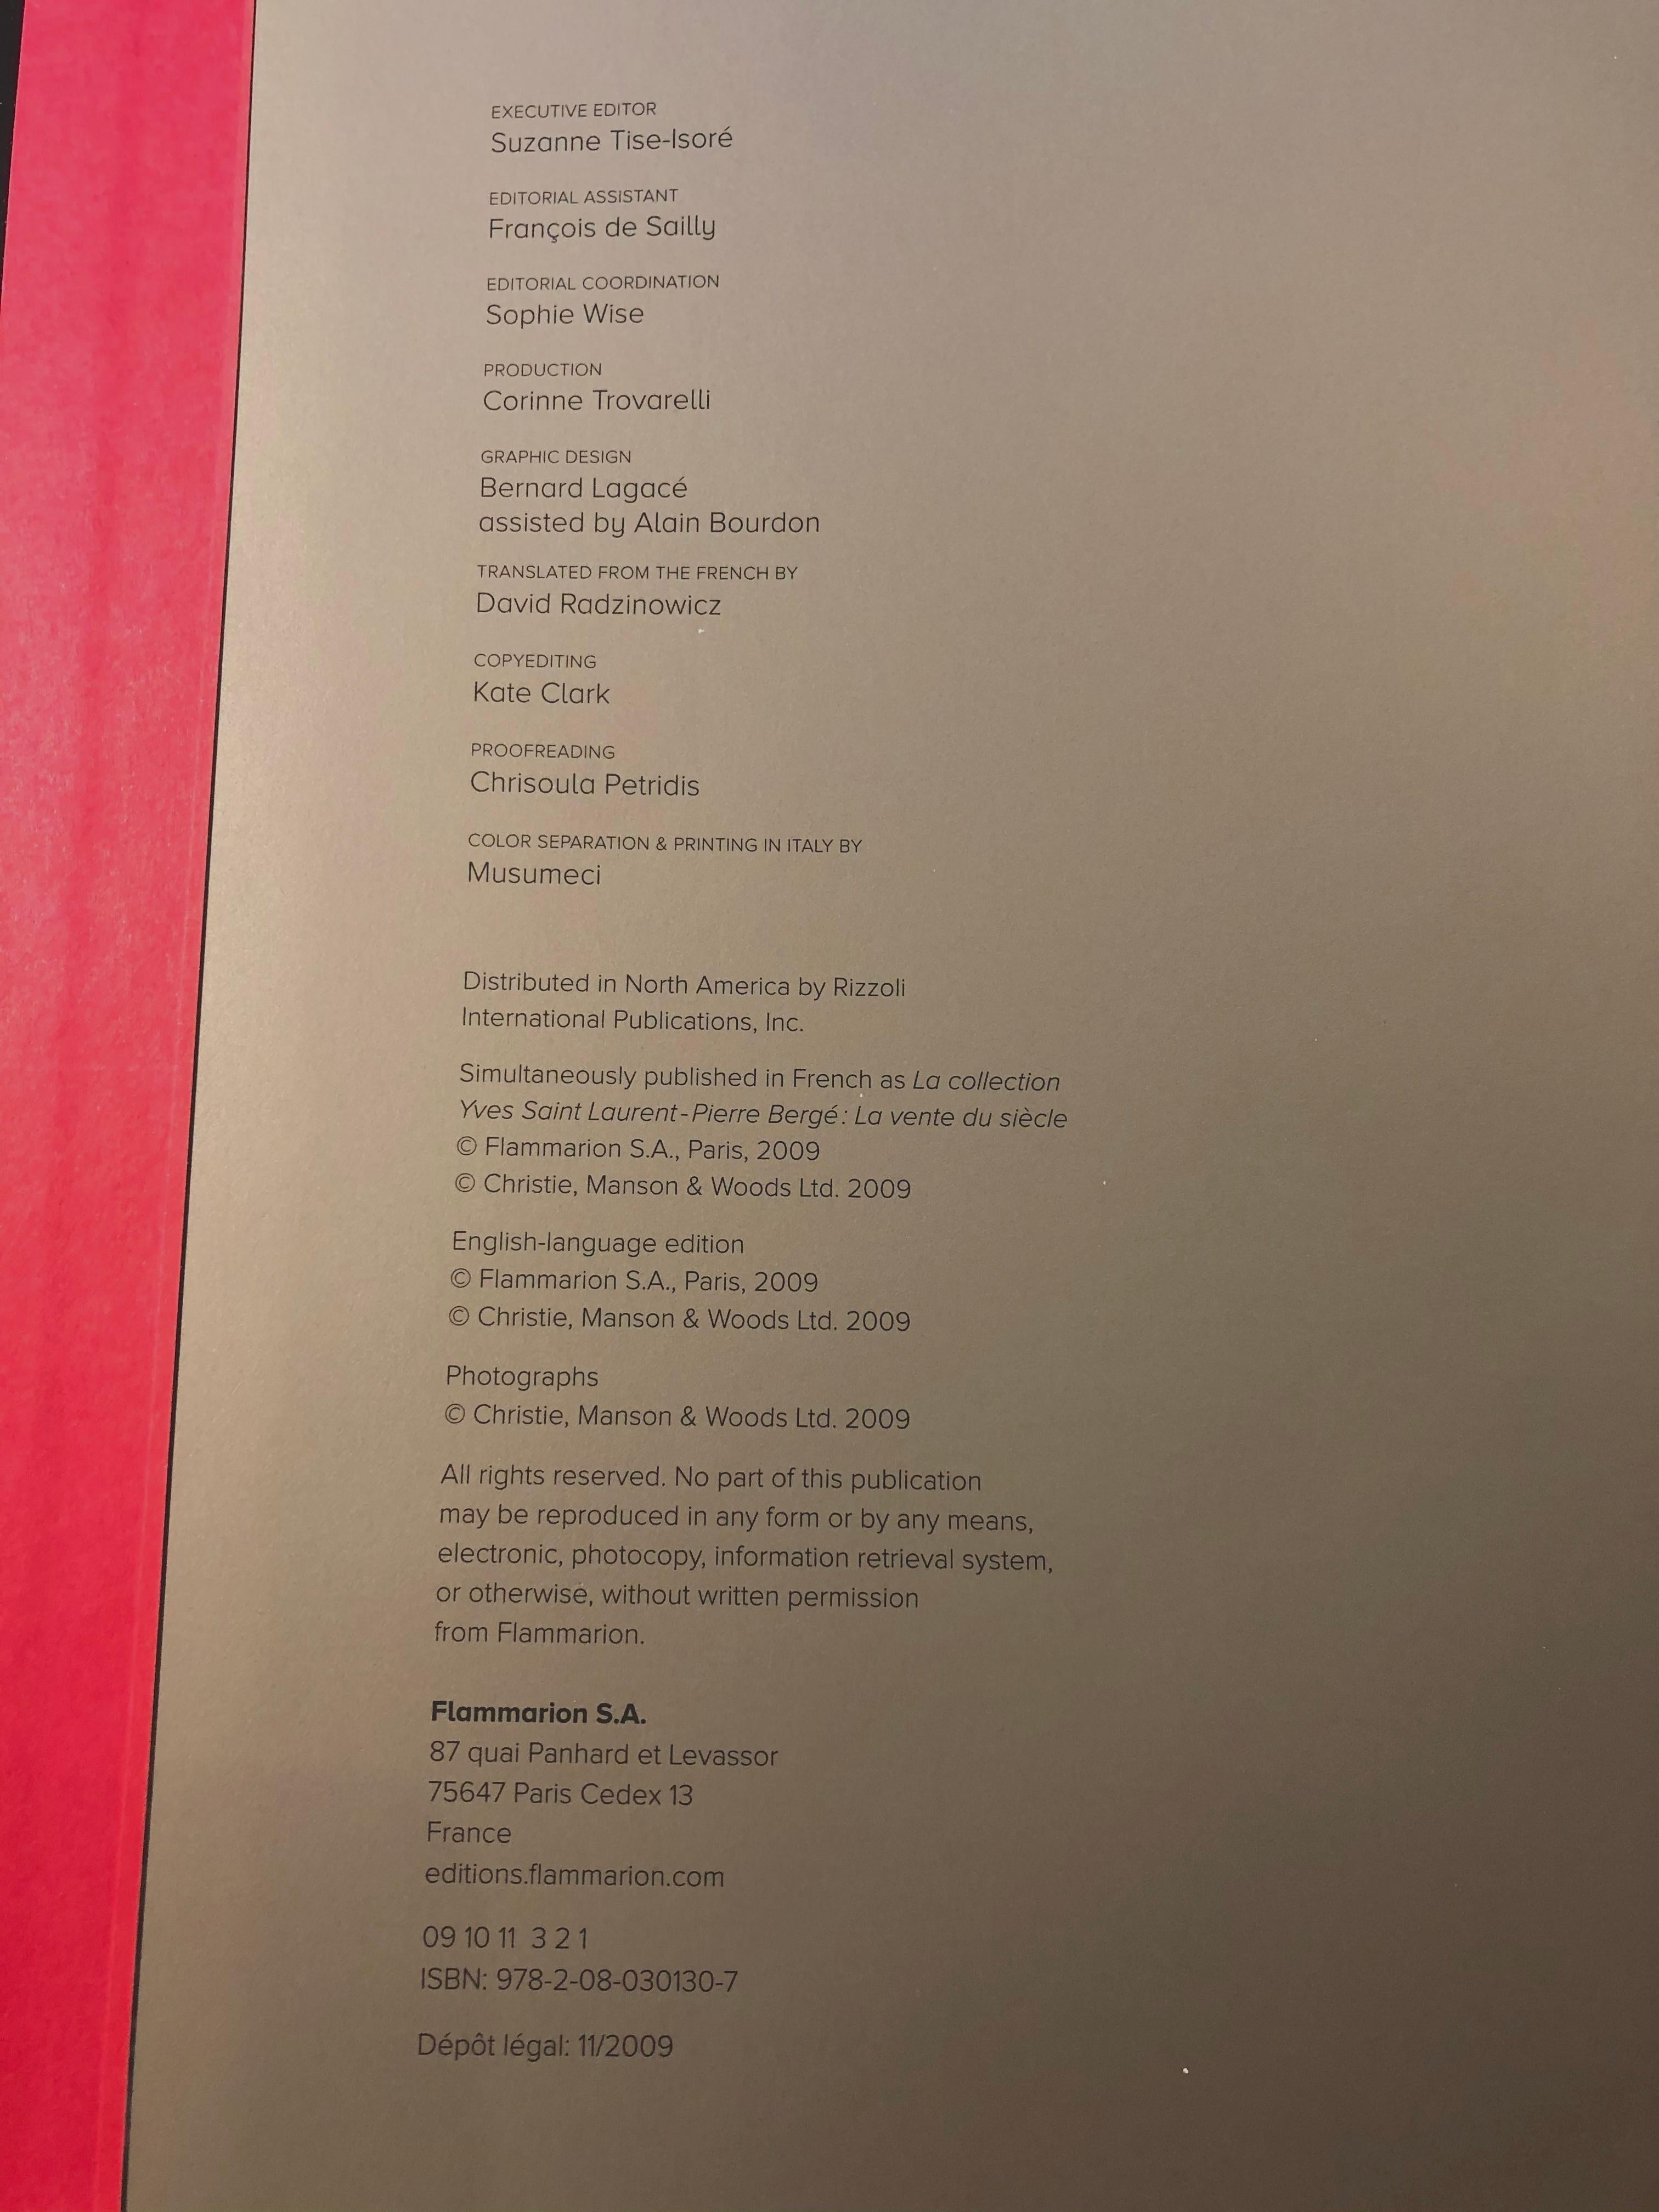 The Yves Saint Laurent - Pierre Bergé Collection. 1st Edition, Christie's, 2009 4